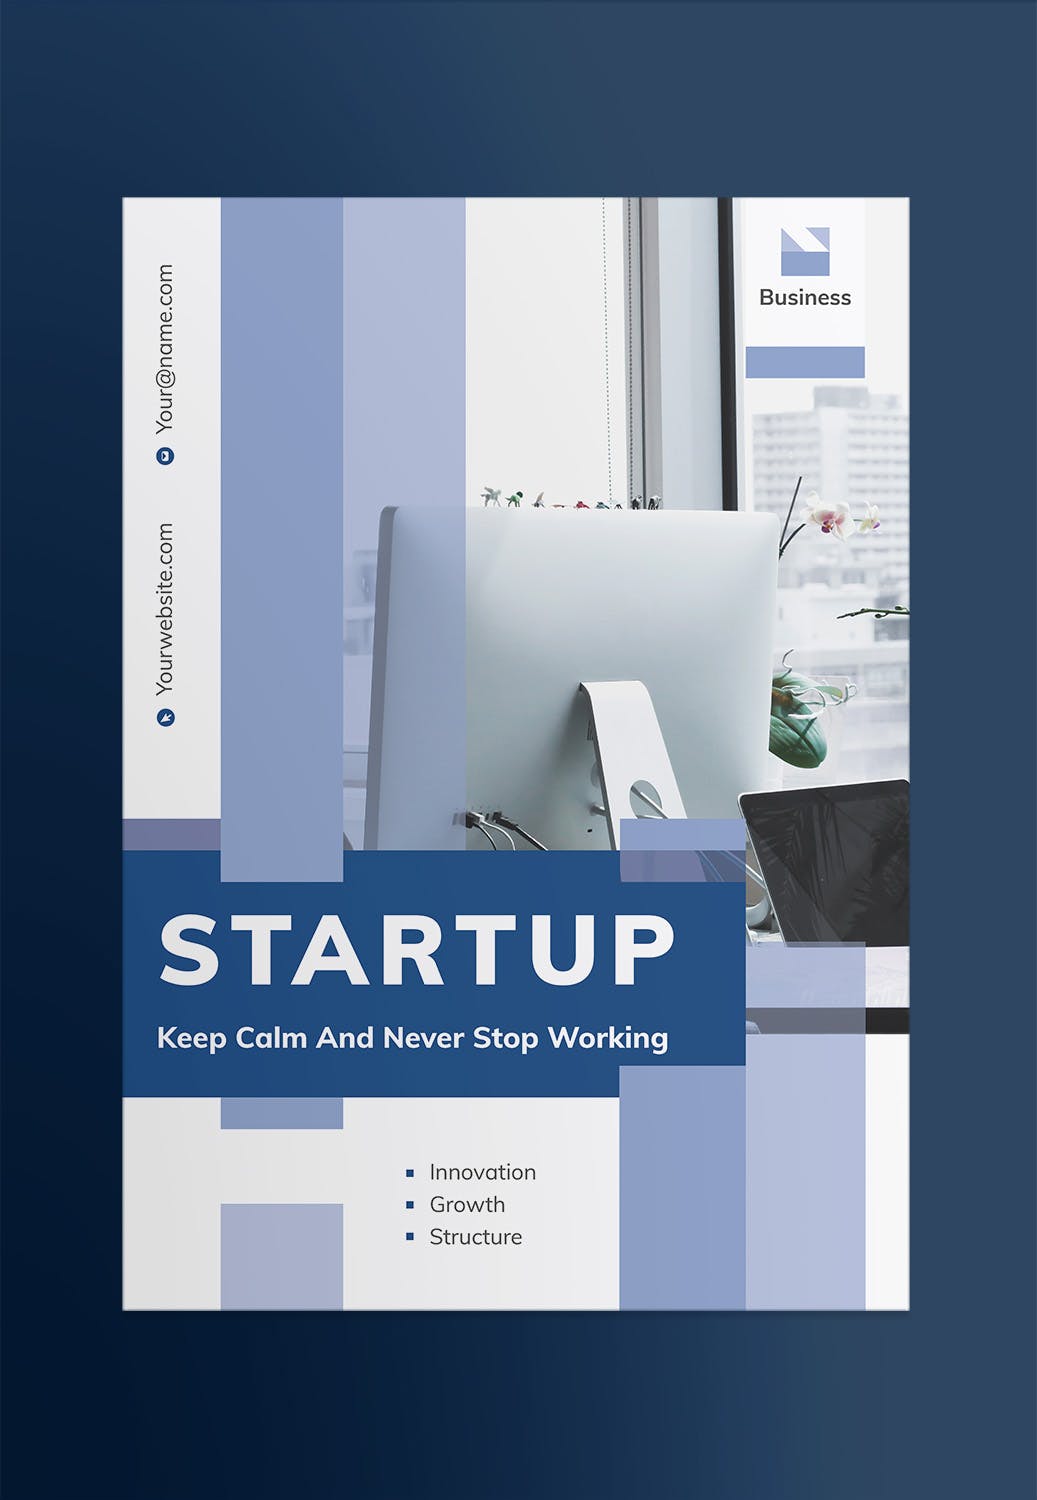 创业互联网项目简介宣传海报PSD素材第一素材精选模板 Startup Poster插图(1)